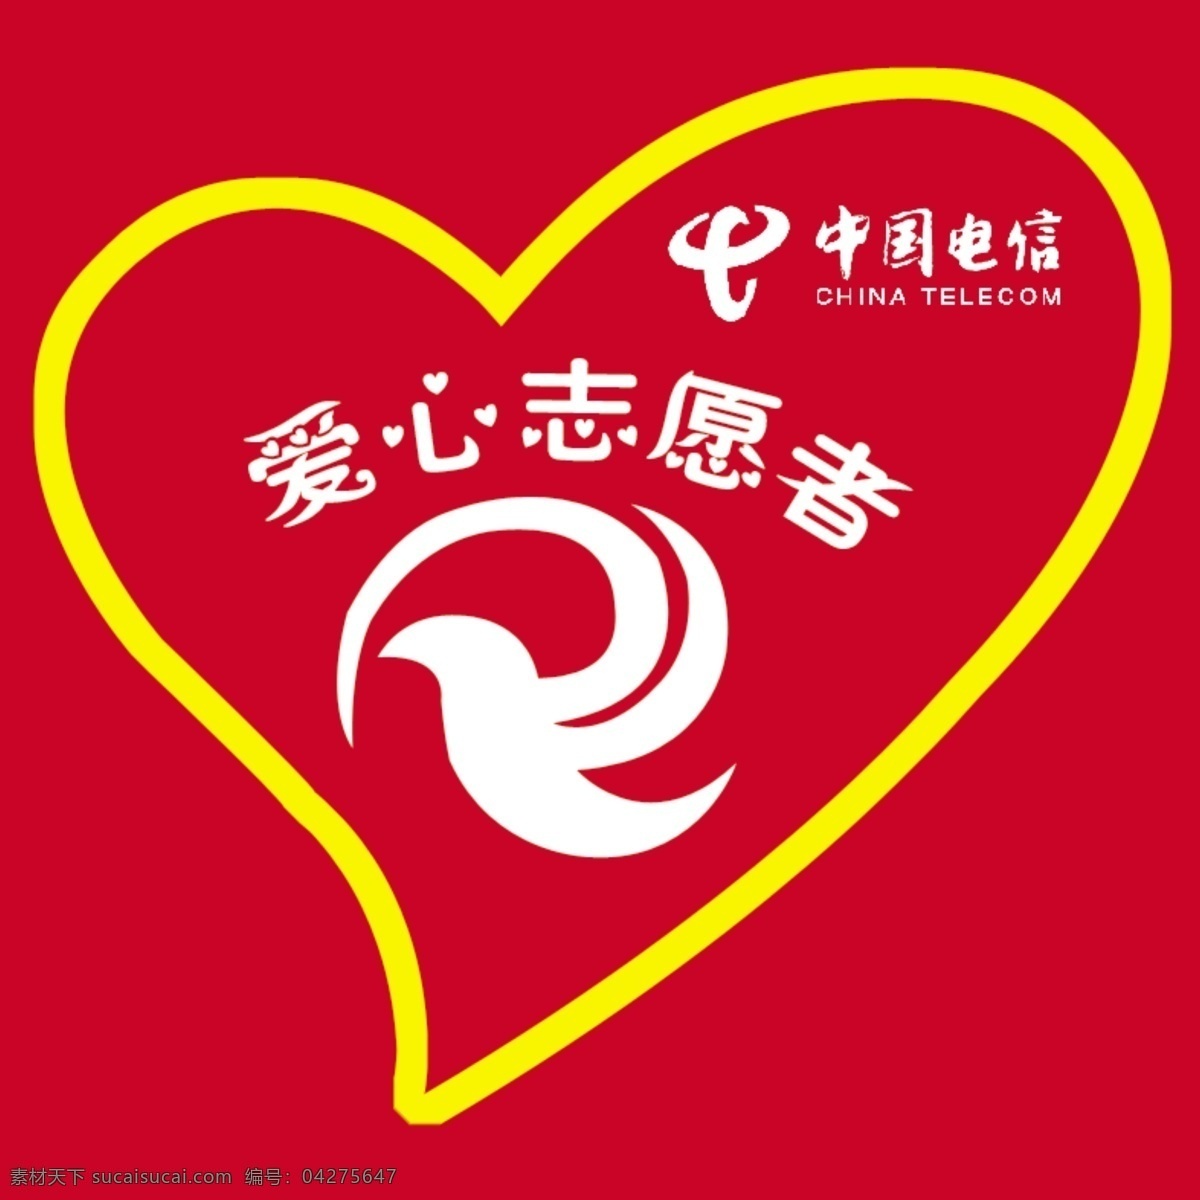 爱心 志愿者 分层 源文件 中国电信 爱心志愿者 标志 矢量图 现代科技